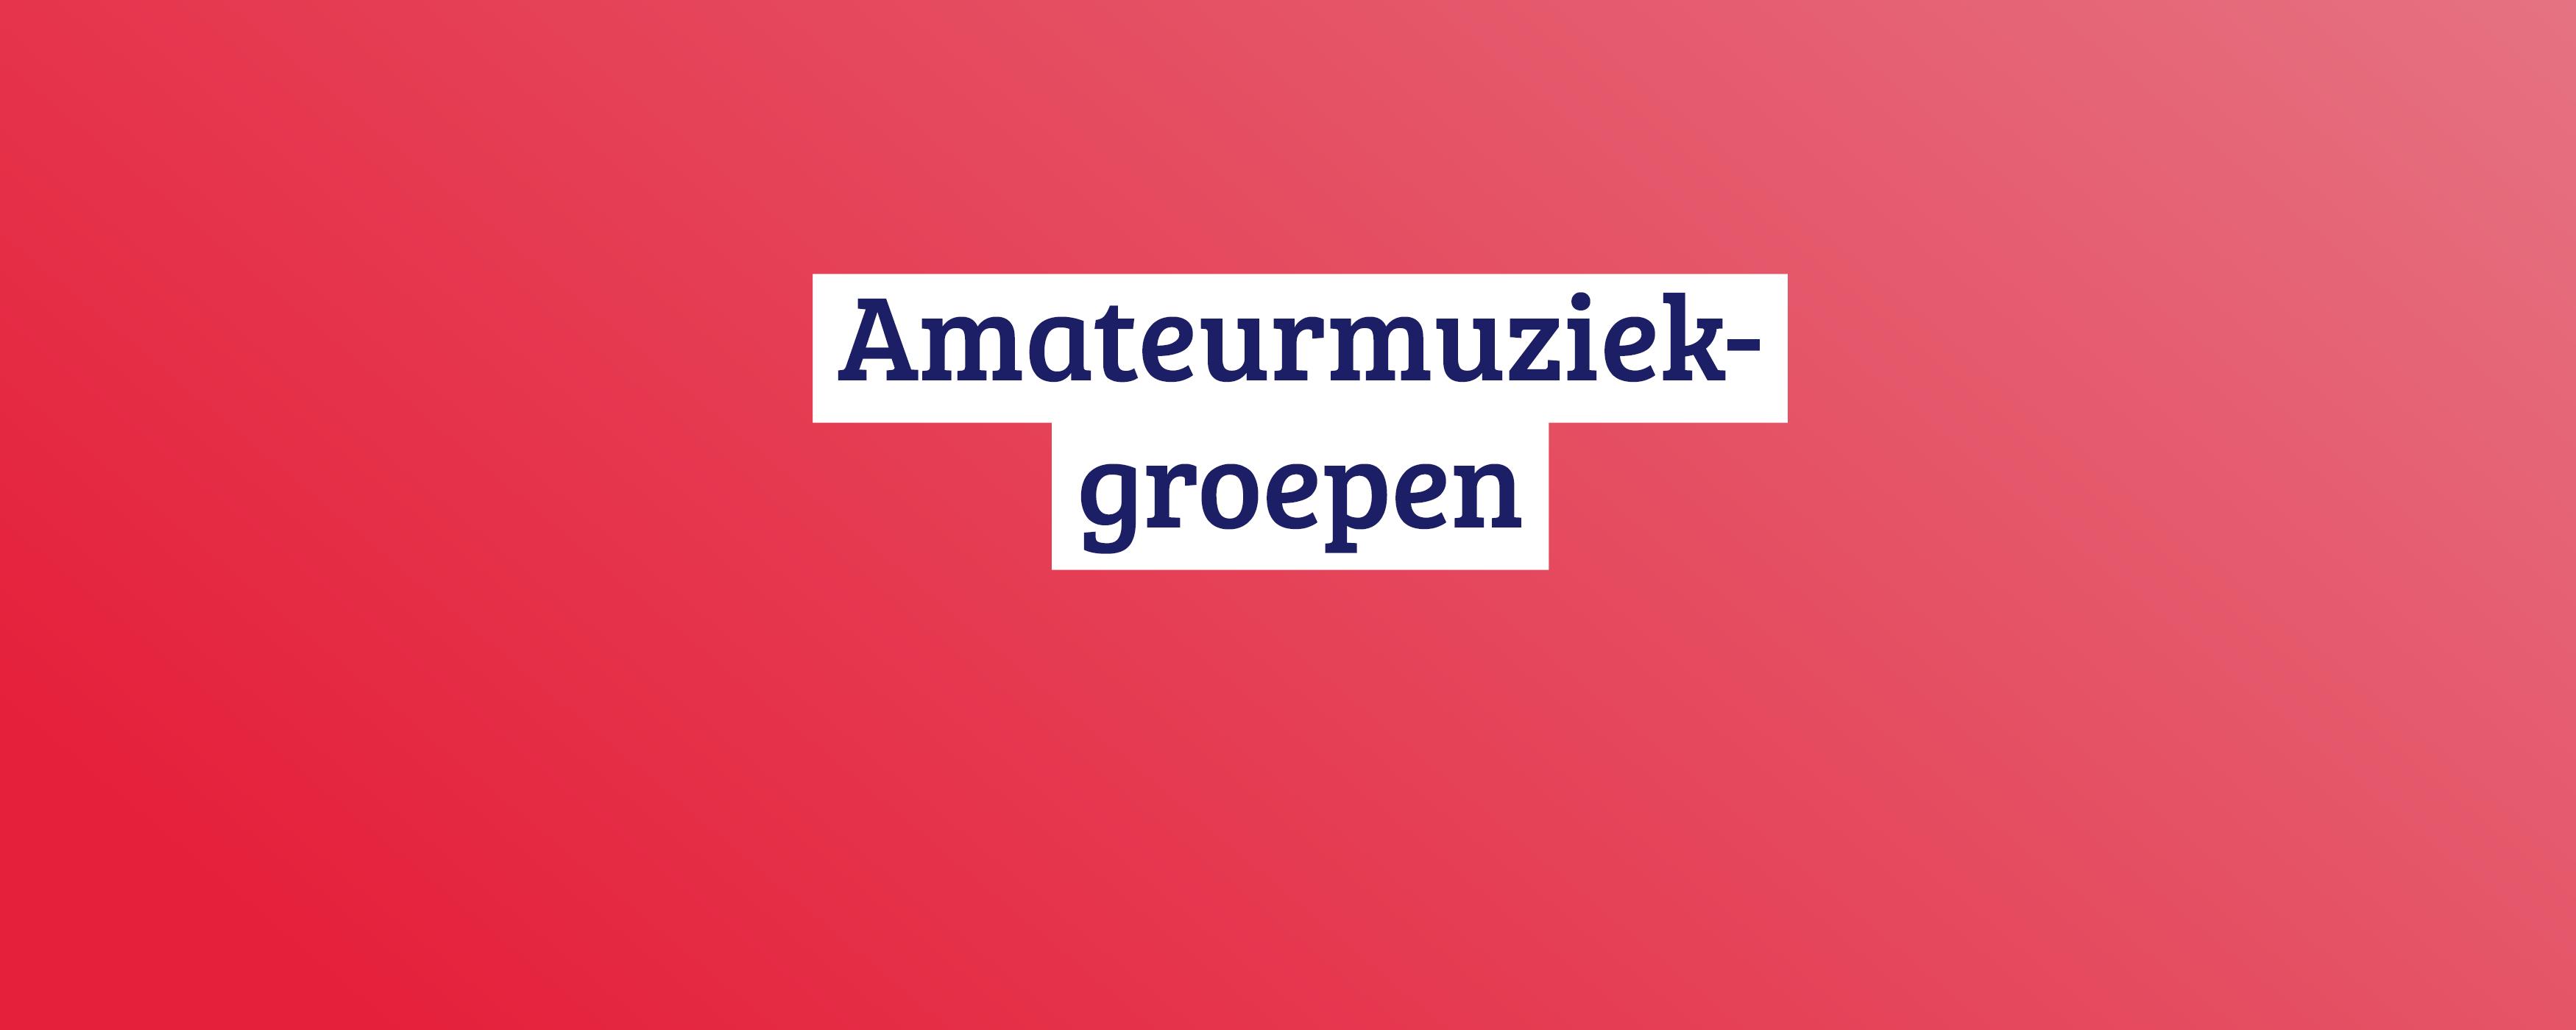 Subsidies voor amateurmuziekgroepen Cultuur Gent